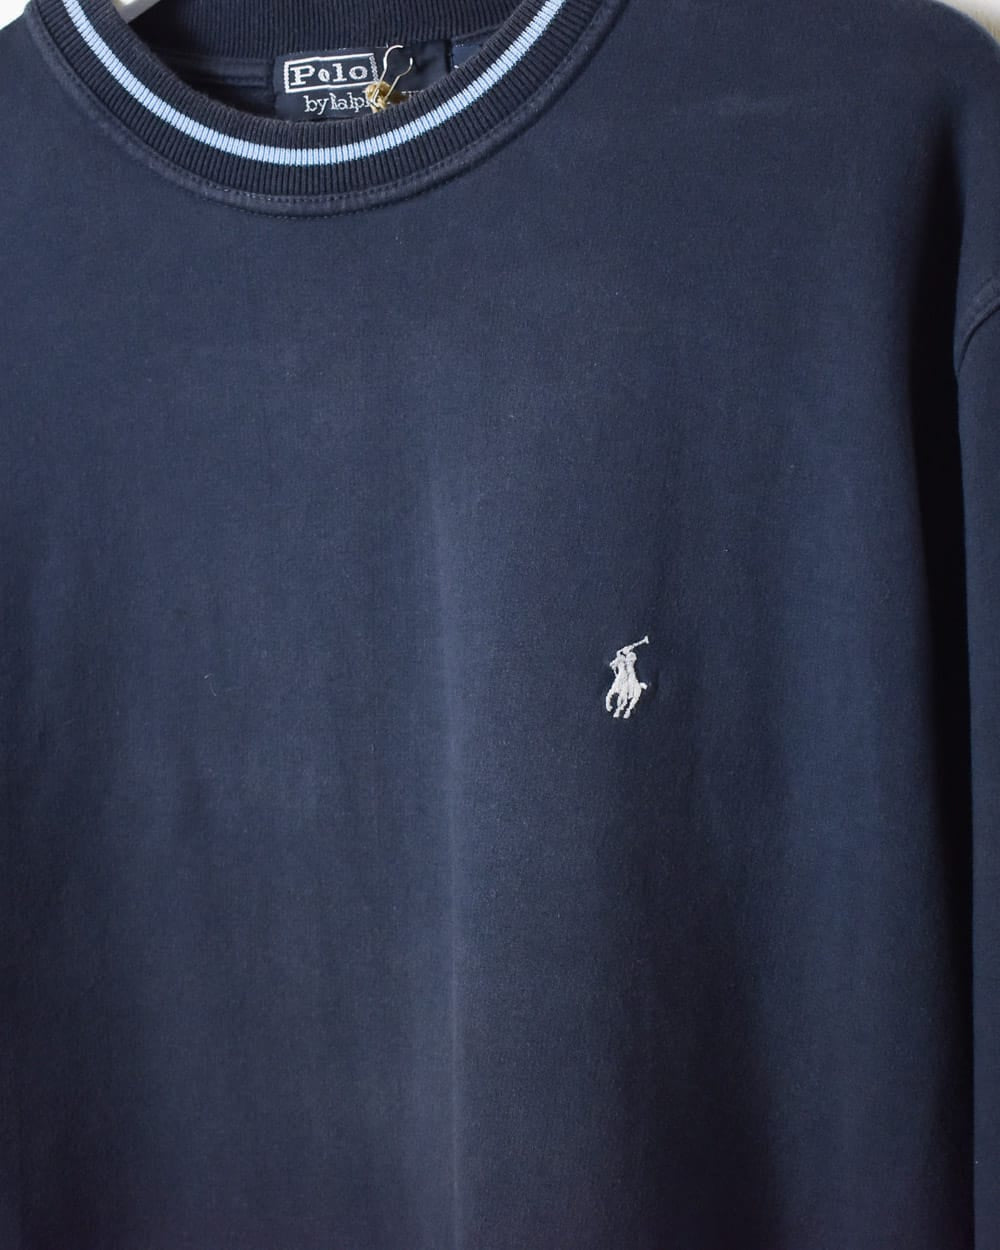 Navy Polo Ralph Lauren Long Sleeved T-Shirt - Medium